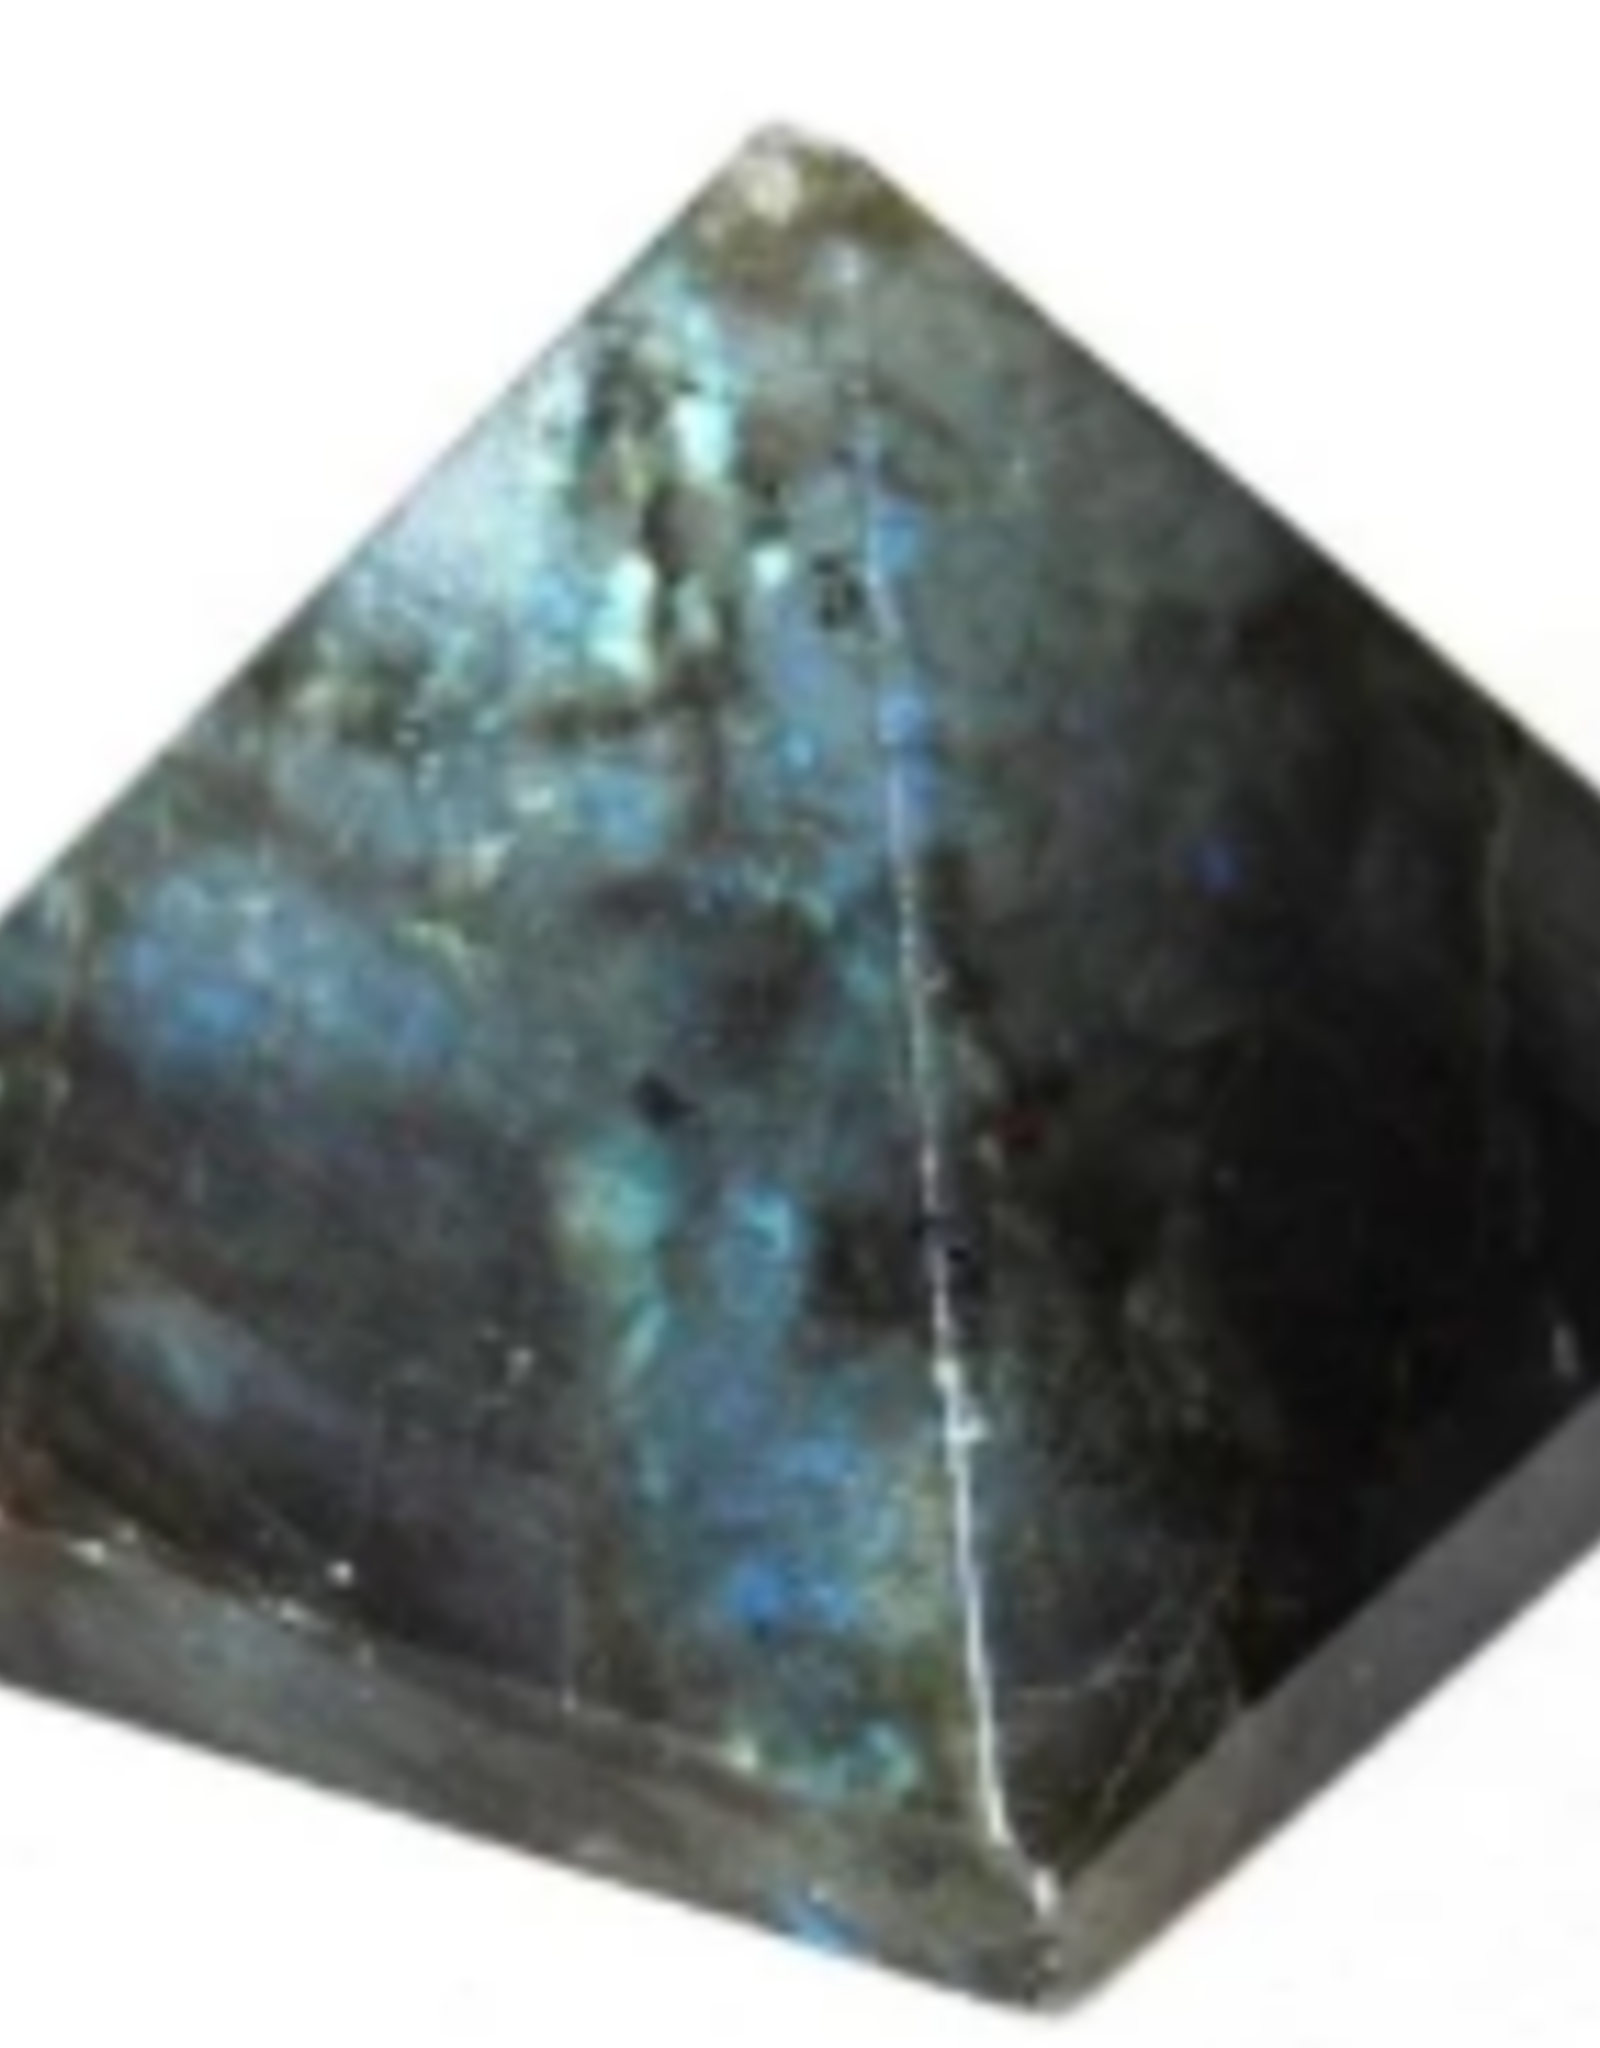 Labradorite Pyramid 1-1.5"